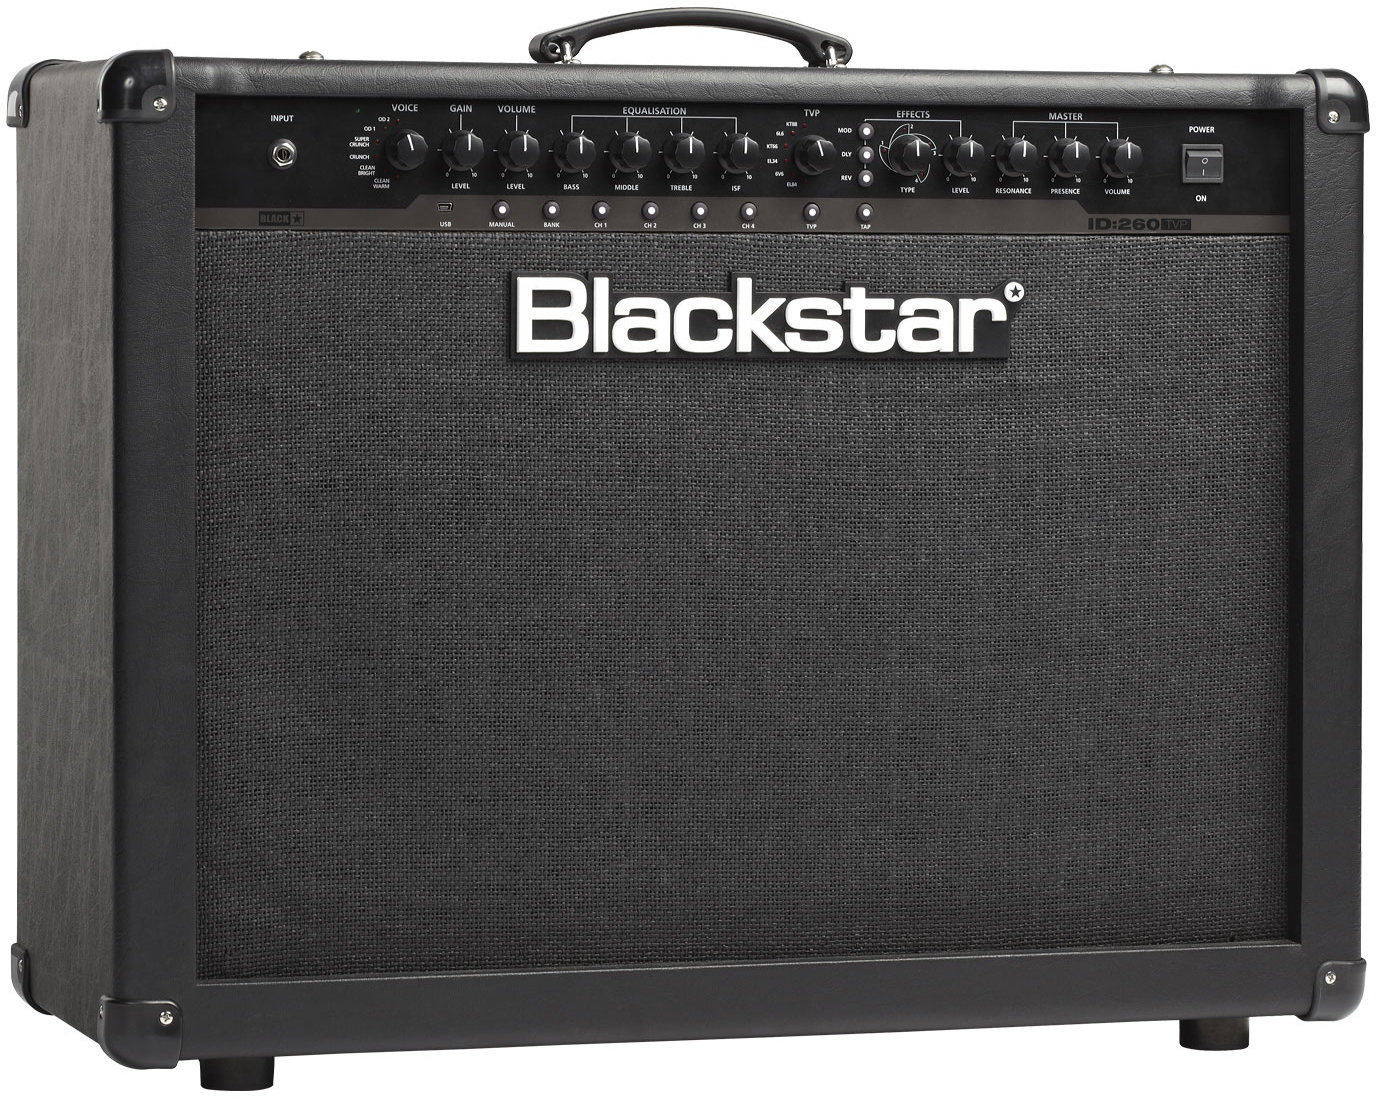 Modelling gitarsko combo pojačalo Blackstar ID: 260 TVP 2x12 Combo